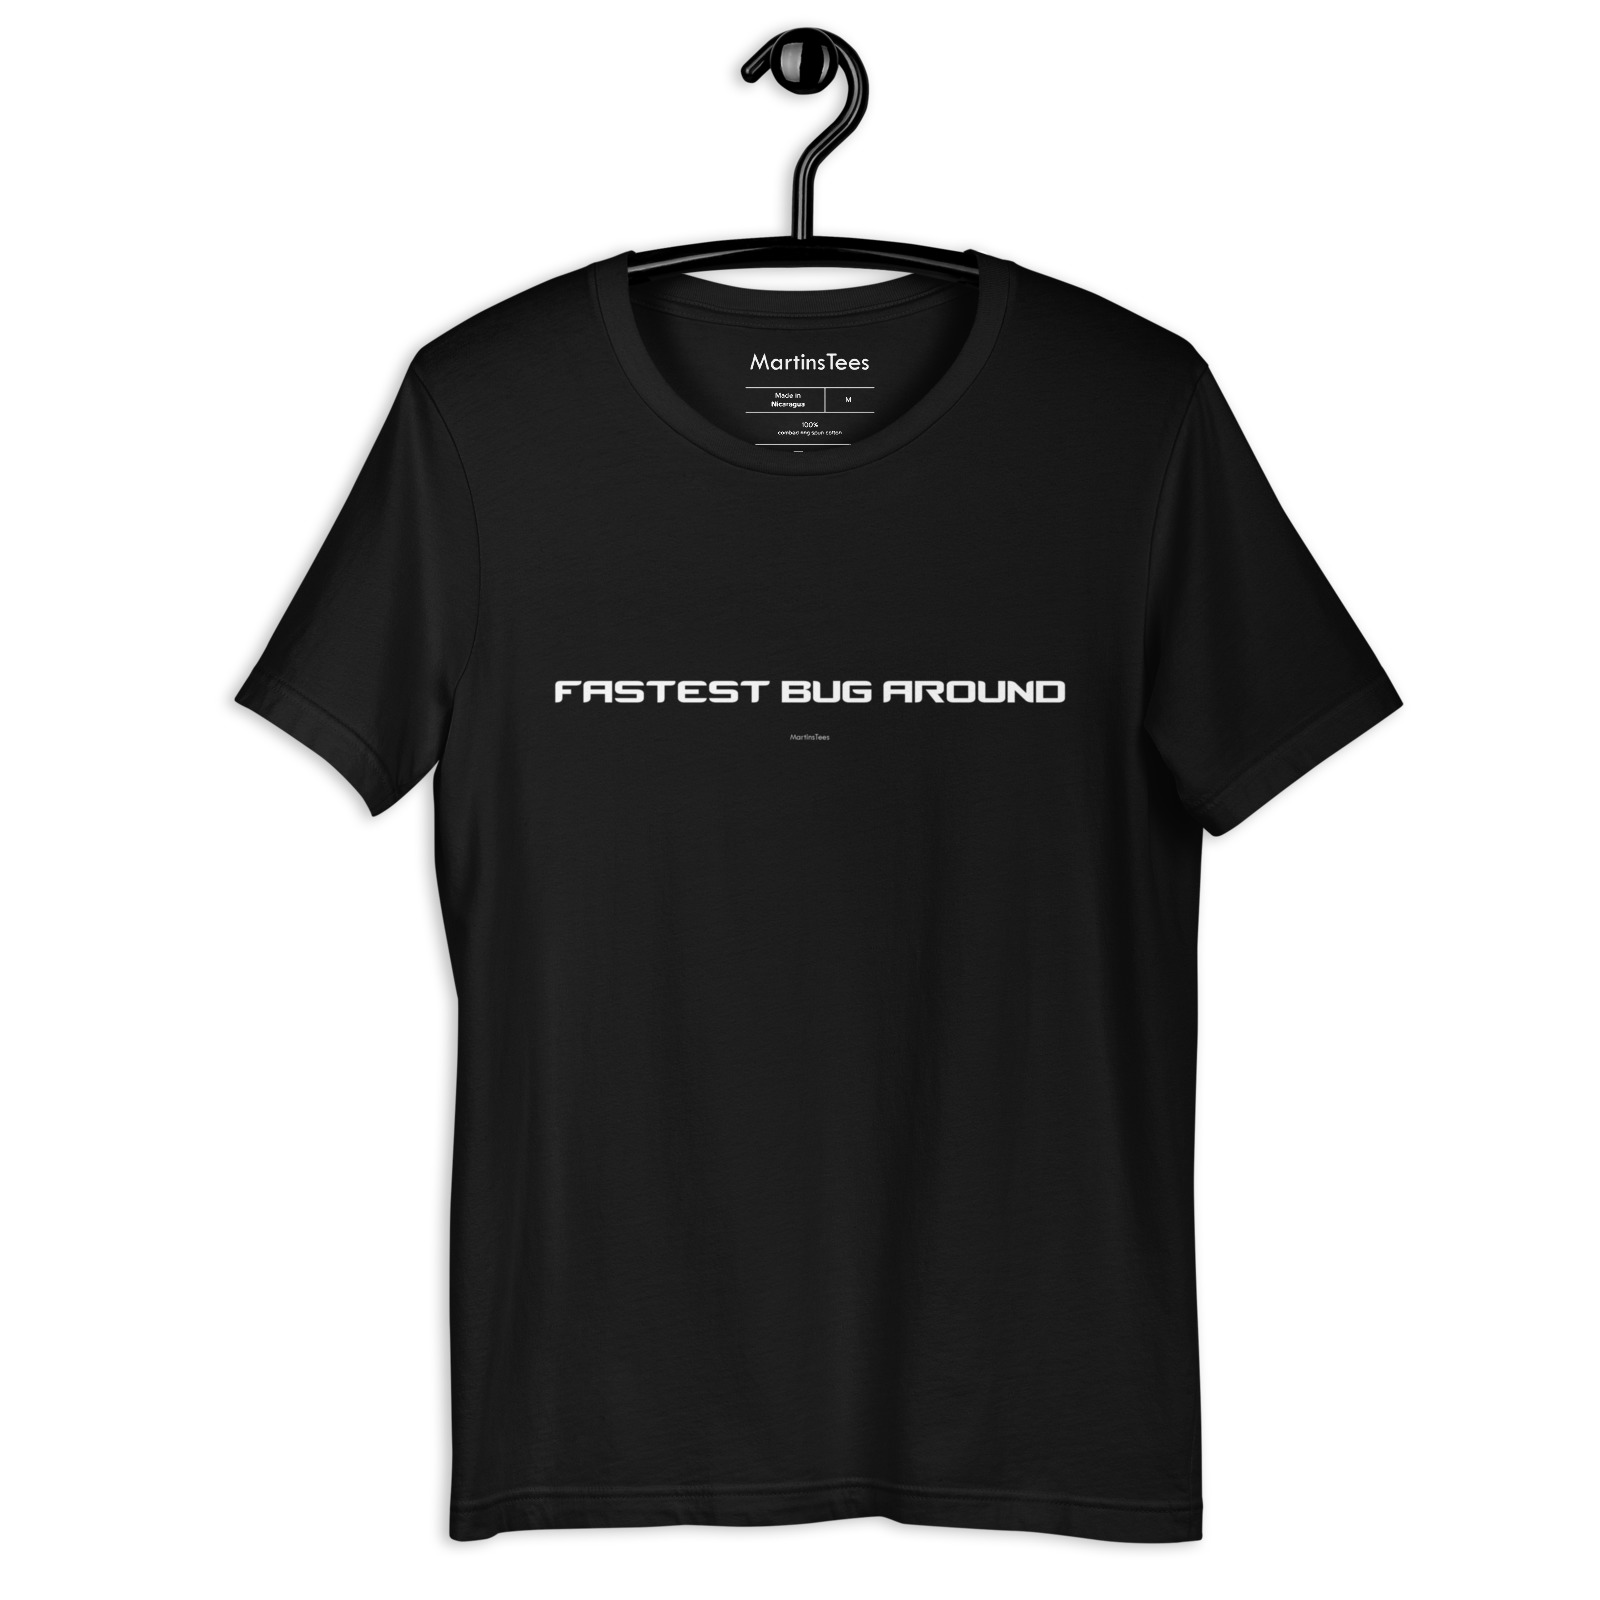 T-shirt: FASTEST BUG AROUND